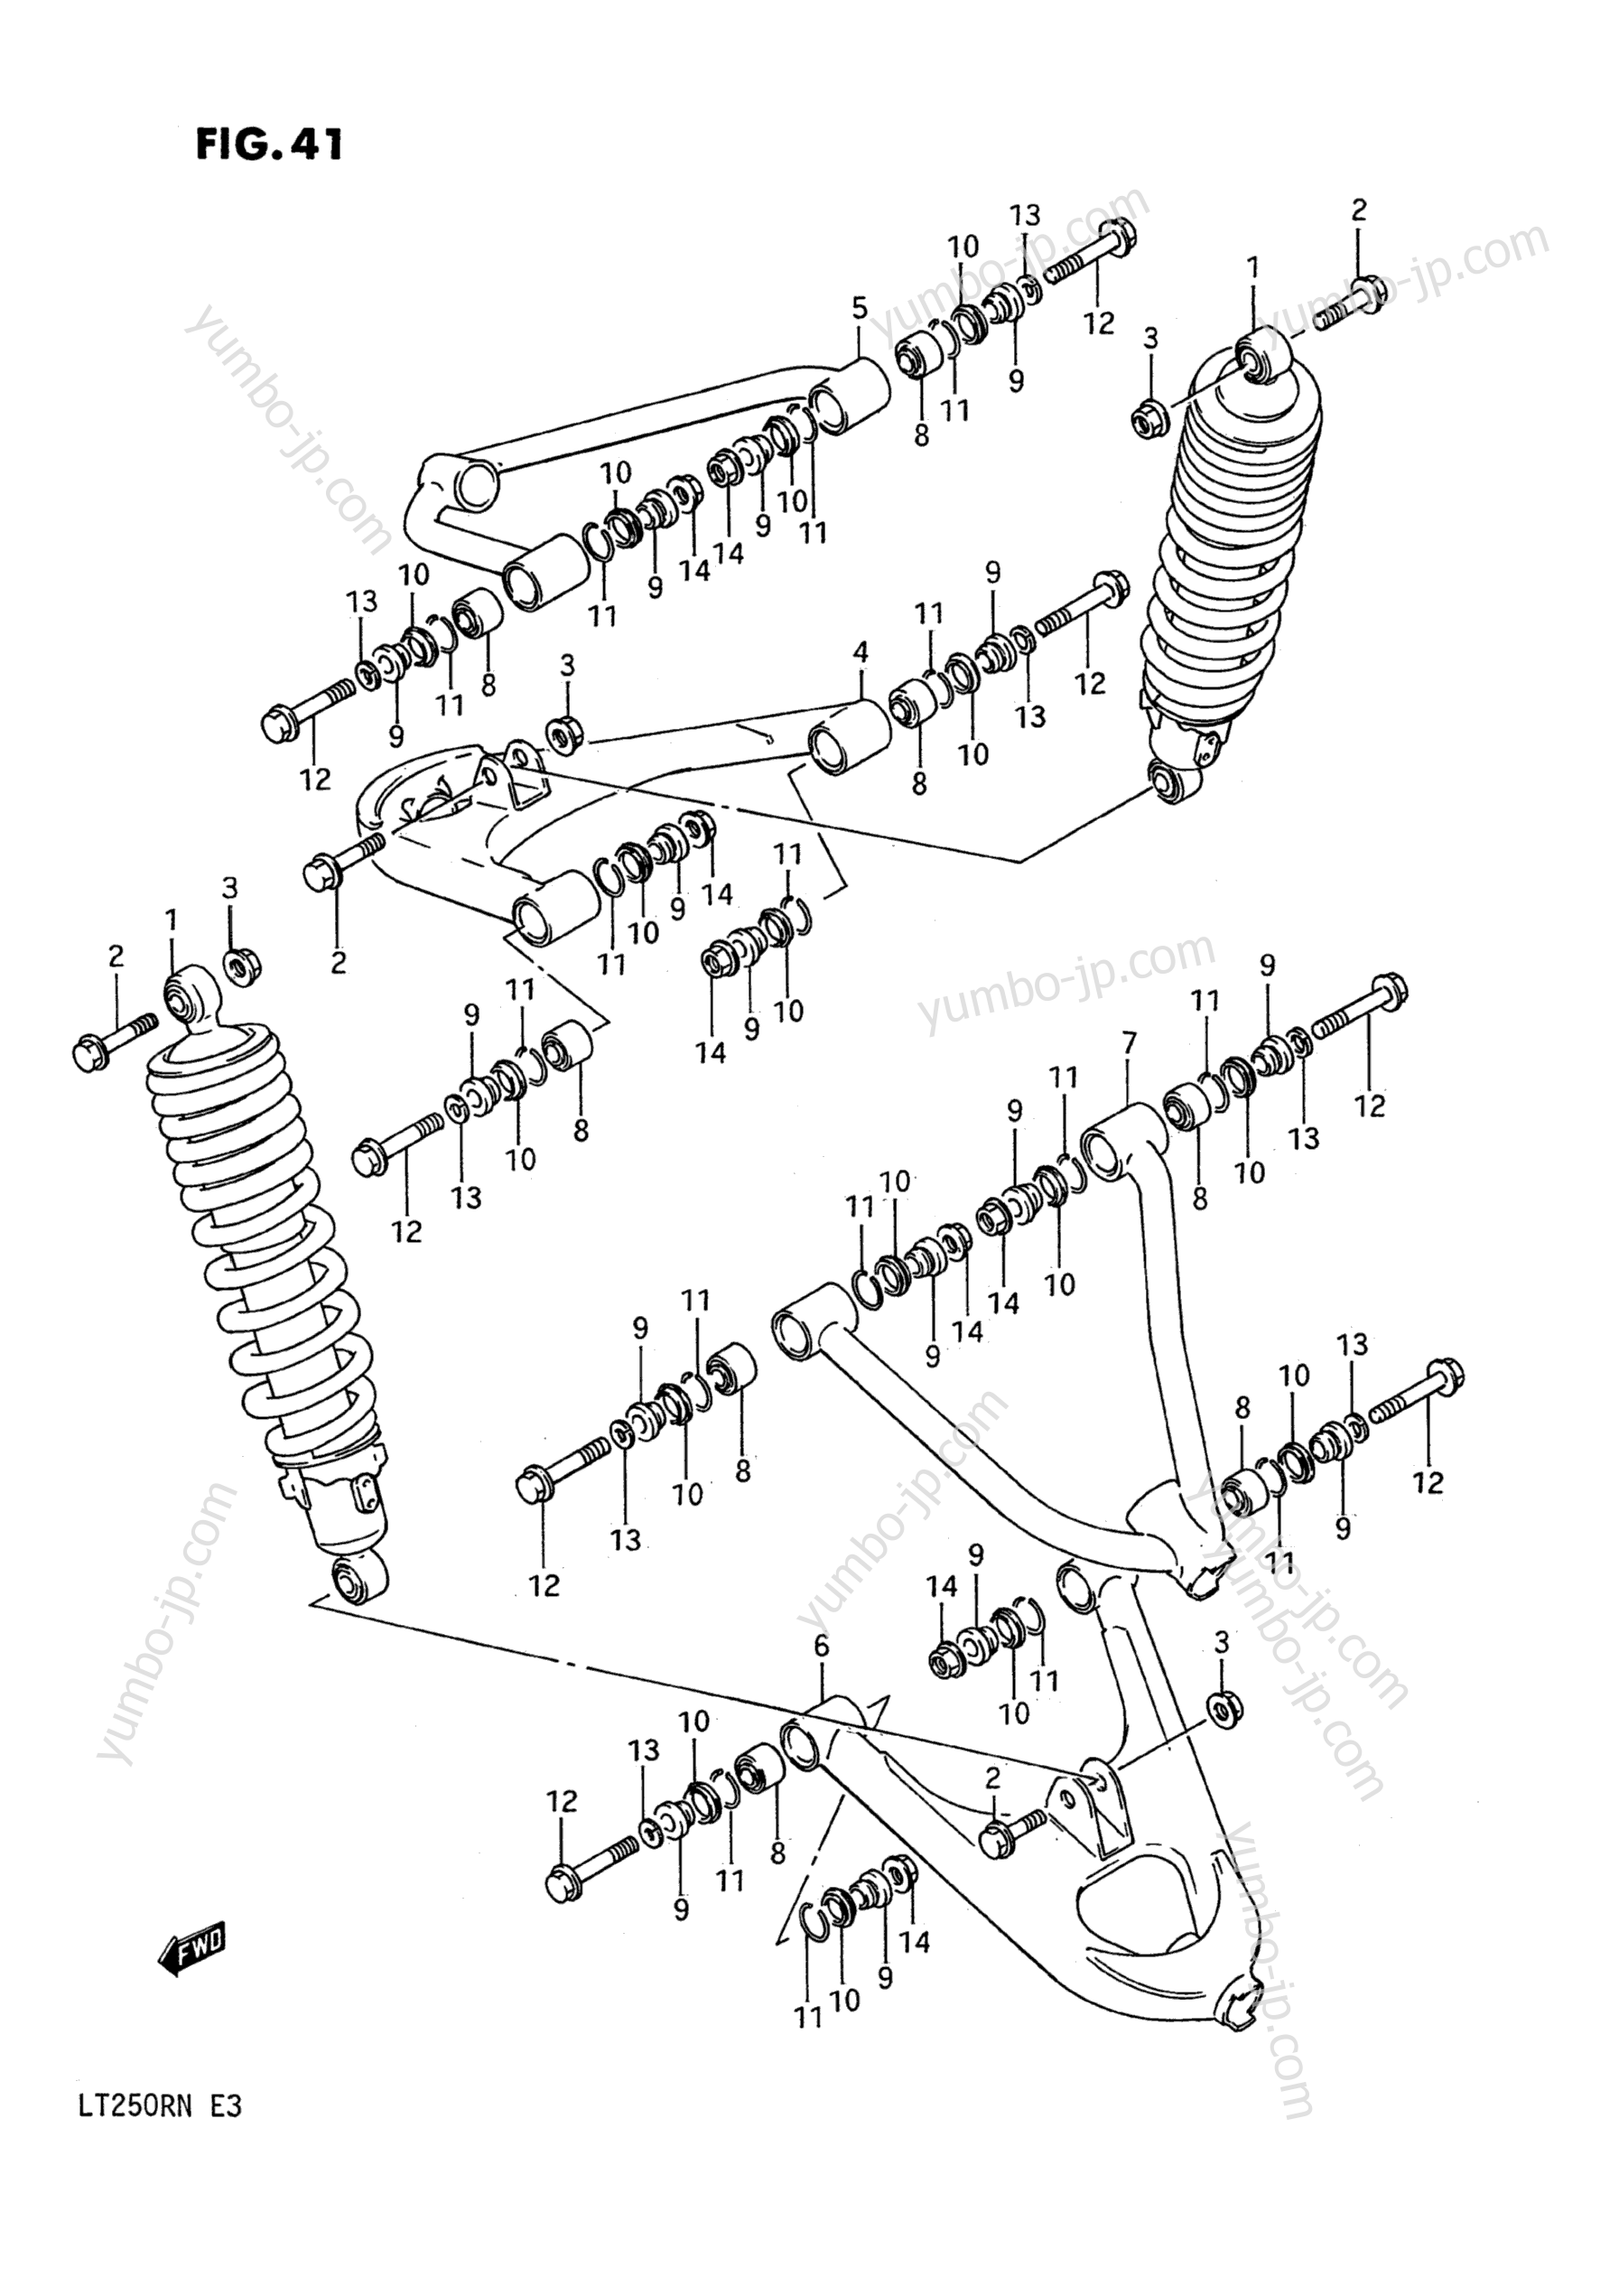 SUSPENSION ARM (MODEL F/G) for ATVs SUZUKI QuadRacer (LT250R) 1985 year